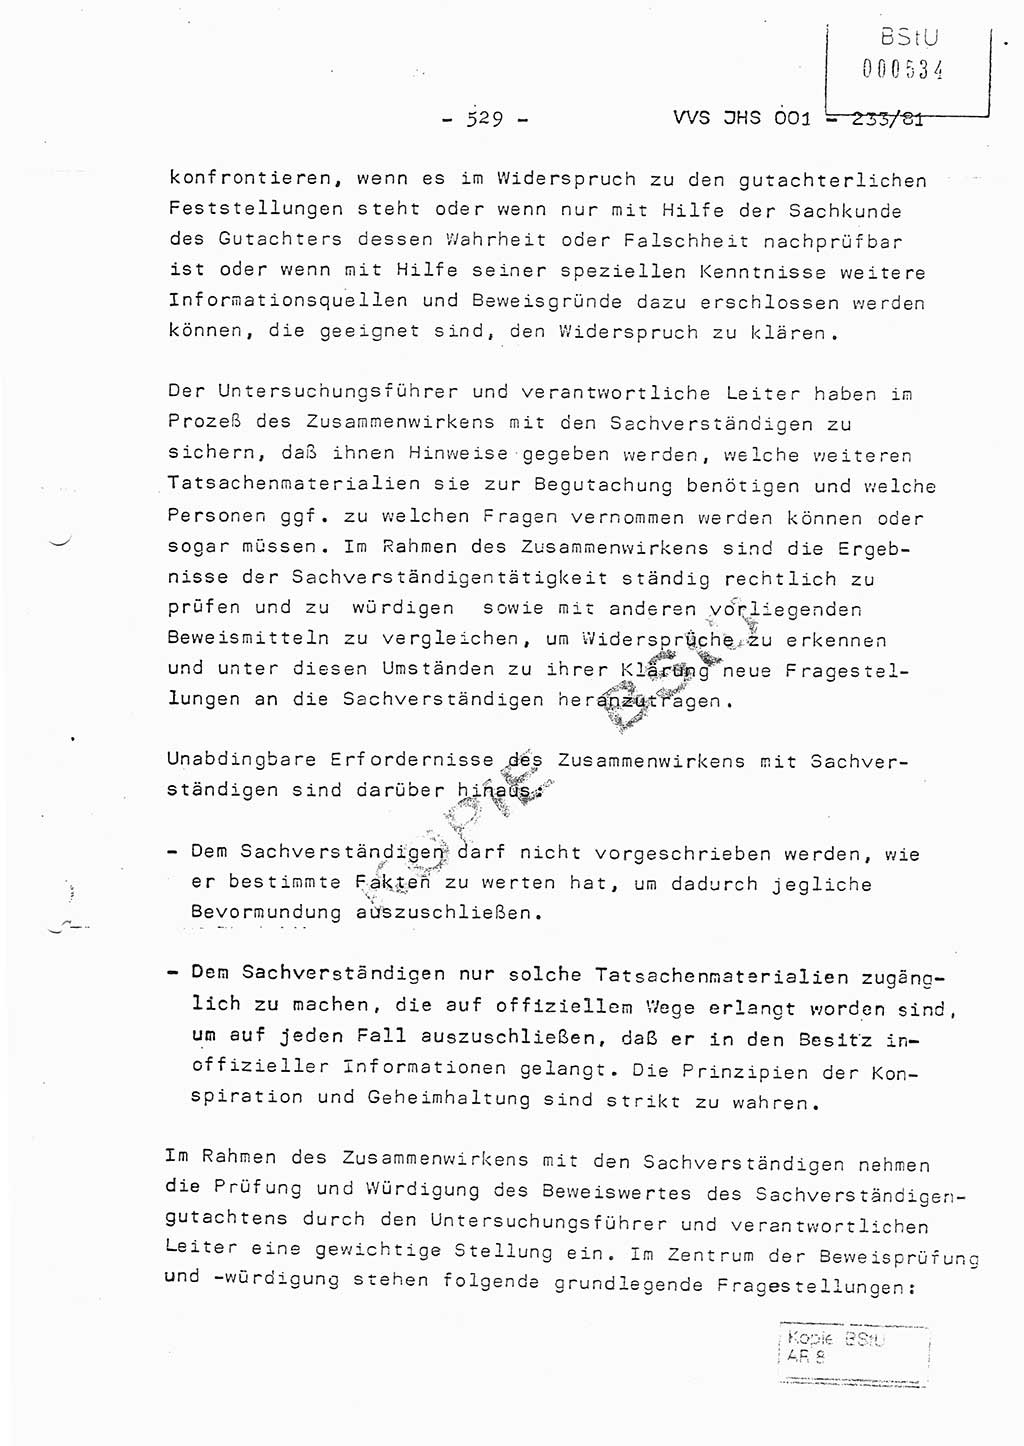 Dissertation Oberstleutnant Horst Zank (JHS), Oberstleutnant Dr. Karl-Heinz Knoblauch (JHS), Oberstleutnant Gustav-Adolf Kowalewski (HA Ⅸ), Oberstleutnant Wolfgang Plötner (HA Ⅸ), Ministerium für Staatssicherheit (MfS) [Deutsche Demokratische Republik (DDR)], Juristische Hochschule (JHS), Vertrauliche Verschlußsache (VVS) o001-233/81, Potsdam 1981, Blatt 529 (Diss. MfS DDR JHS VVS o001-233/81 1981, Bl. 529)